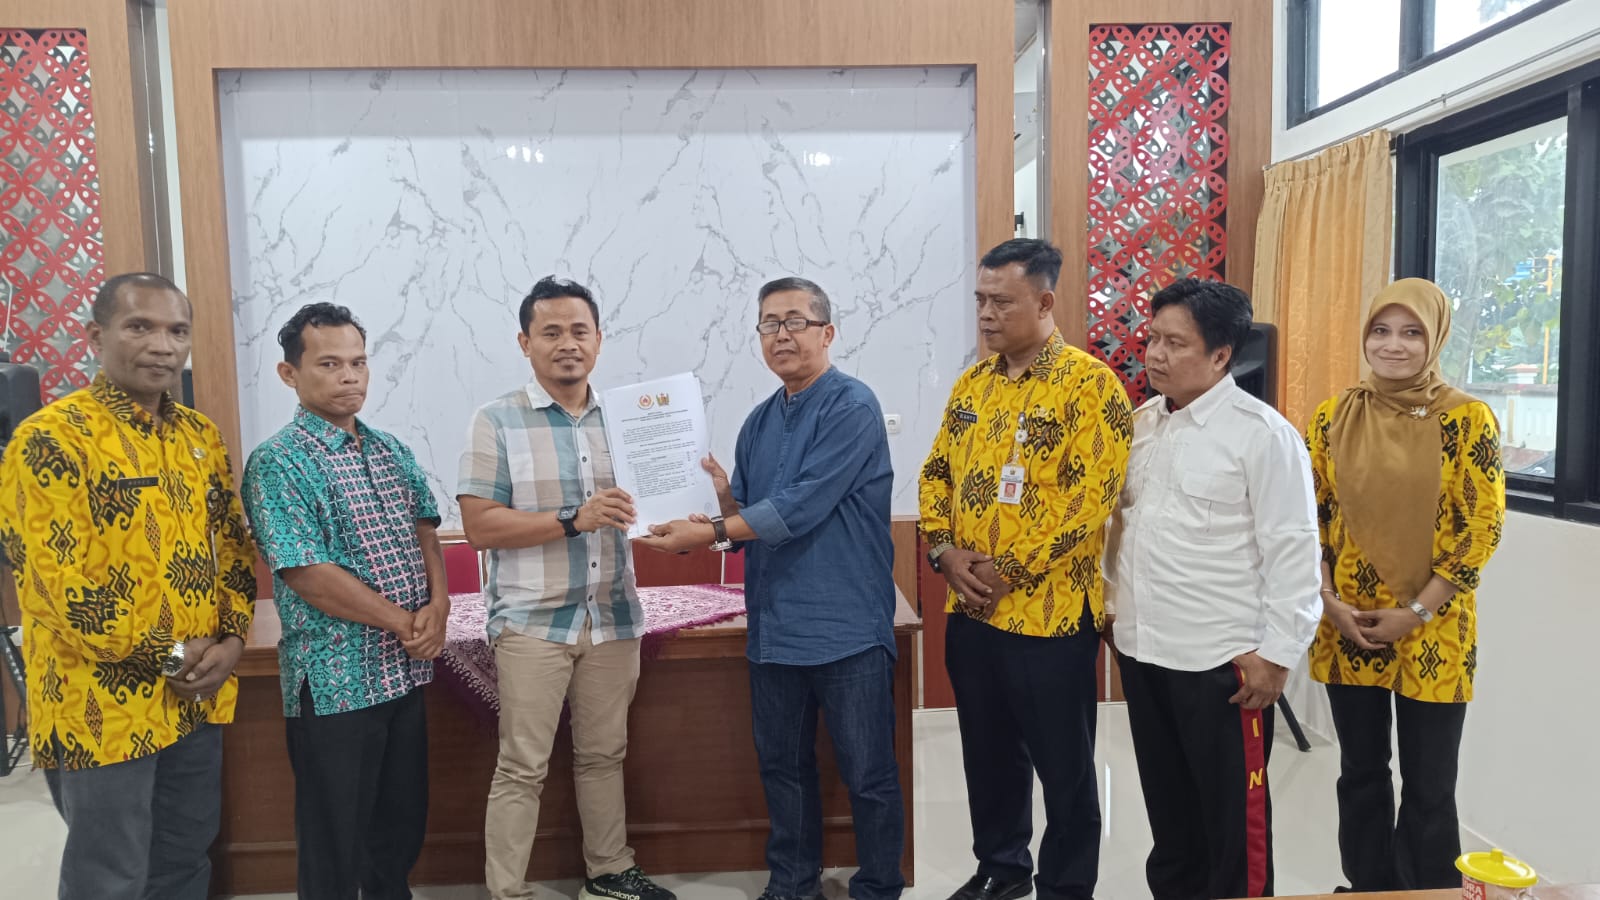 Dr. Rindiansyah Ditetapkan Sebagai Bakal Caketum KONI Kabupaten Pekalongan